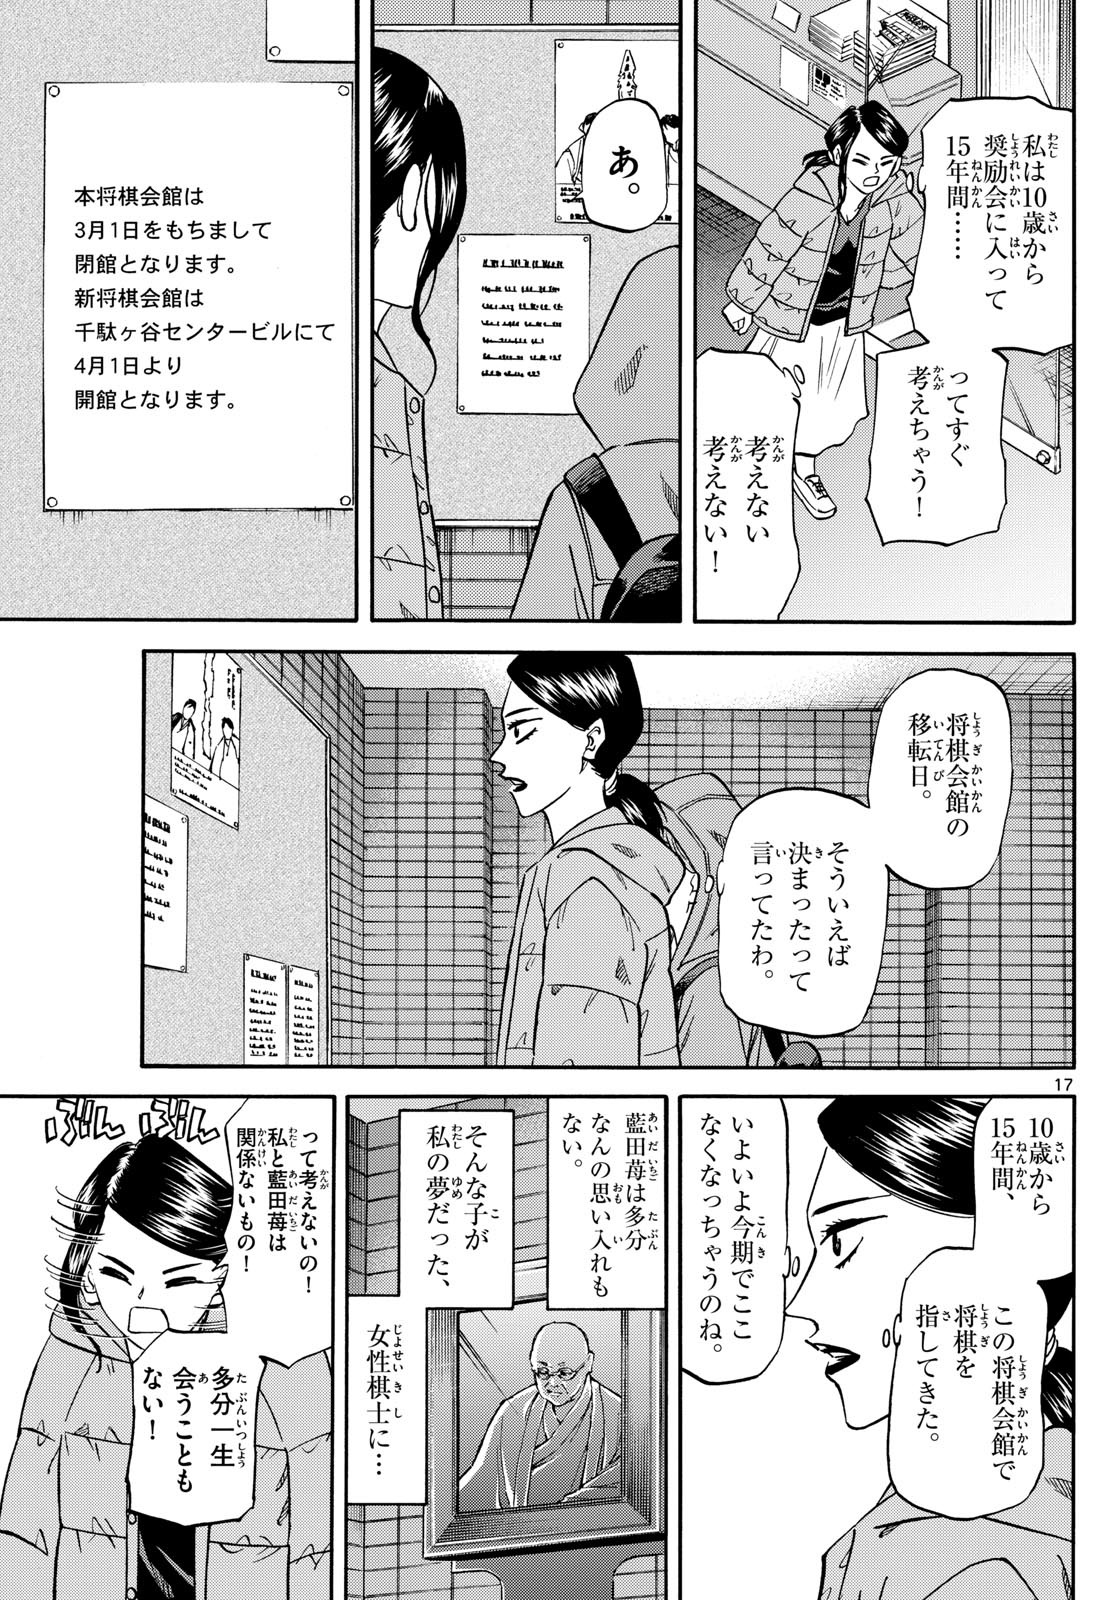 Tatsu to Ichigo - Chapter 172 - Page 17